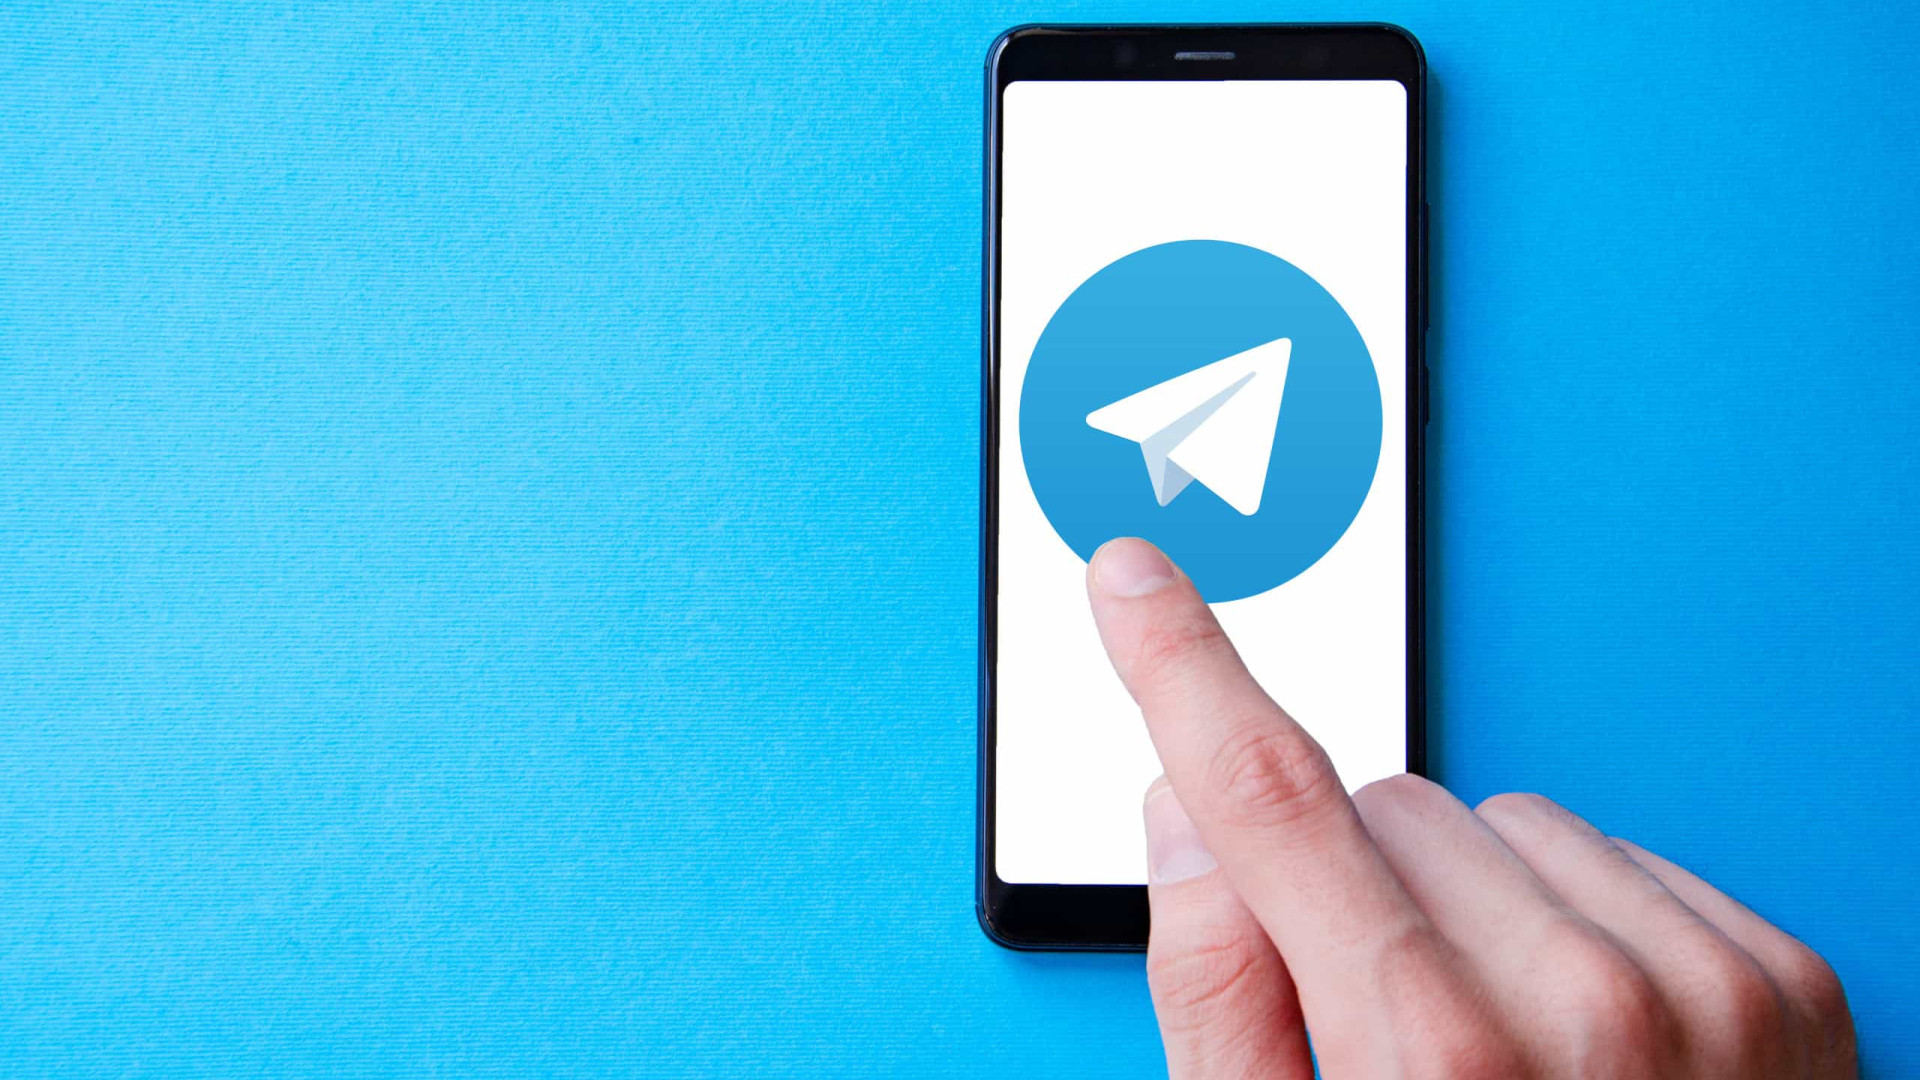 Grupo bolsonarista no Telegram é desbloqueado e adota nova estratégia